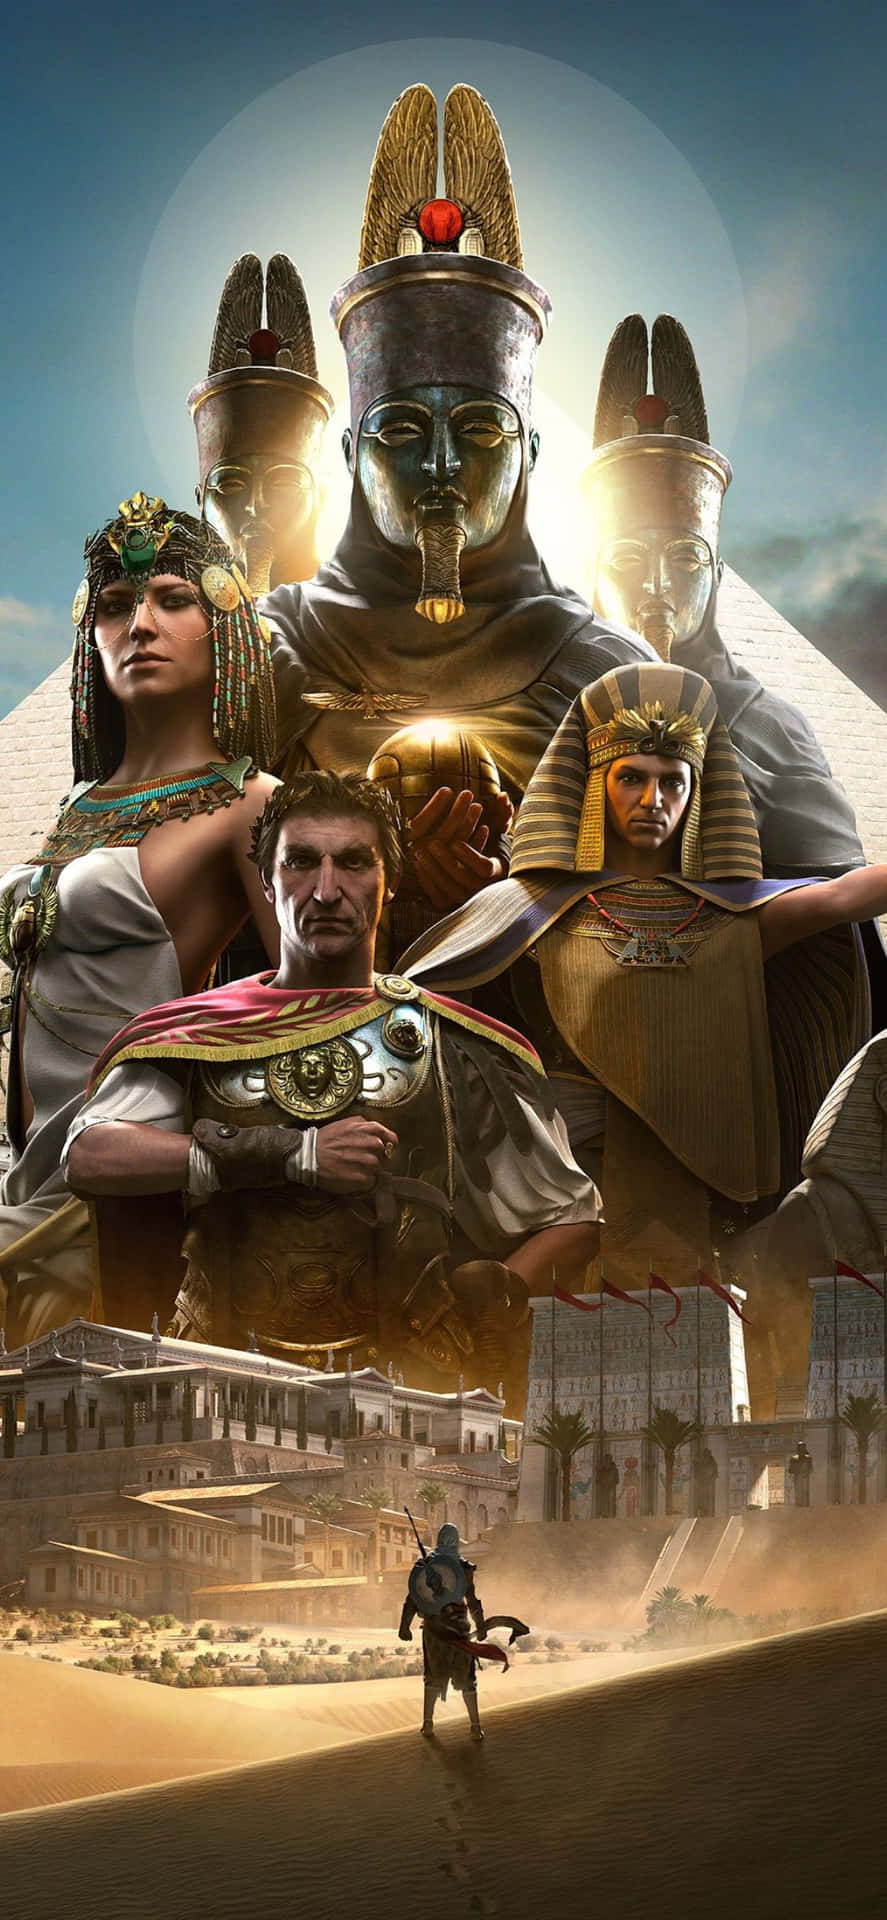 Embárcateen Un Viaje A Través Del Antiguo Egipto Con Assassins Creed Origins En El Iphone X.